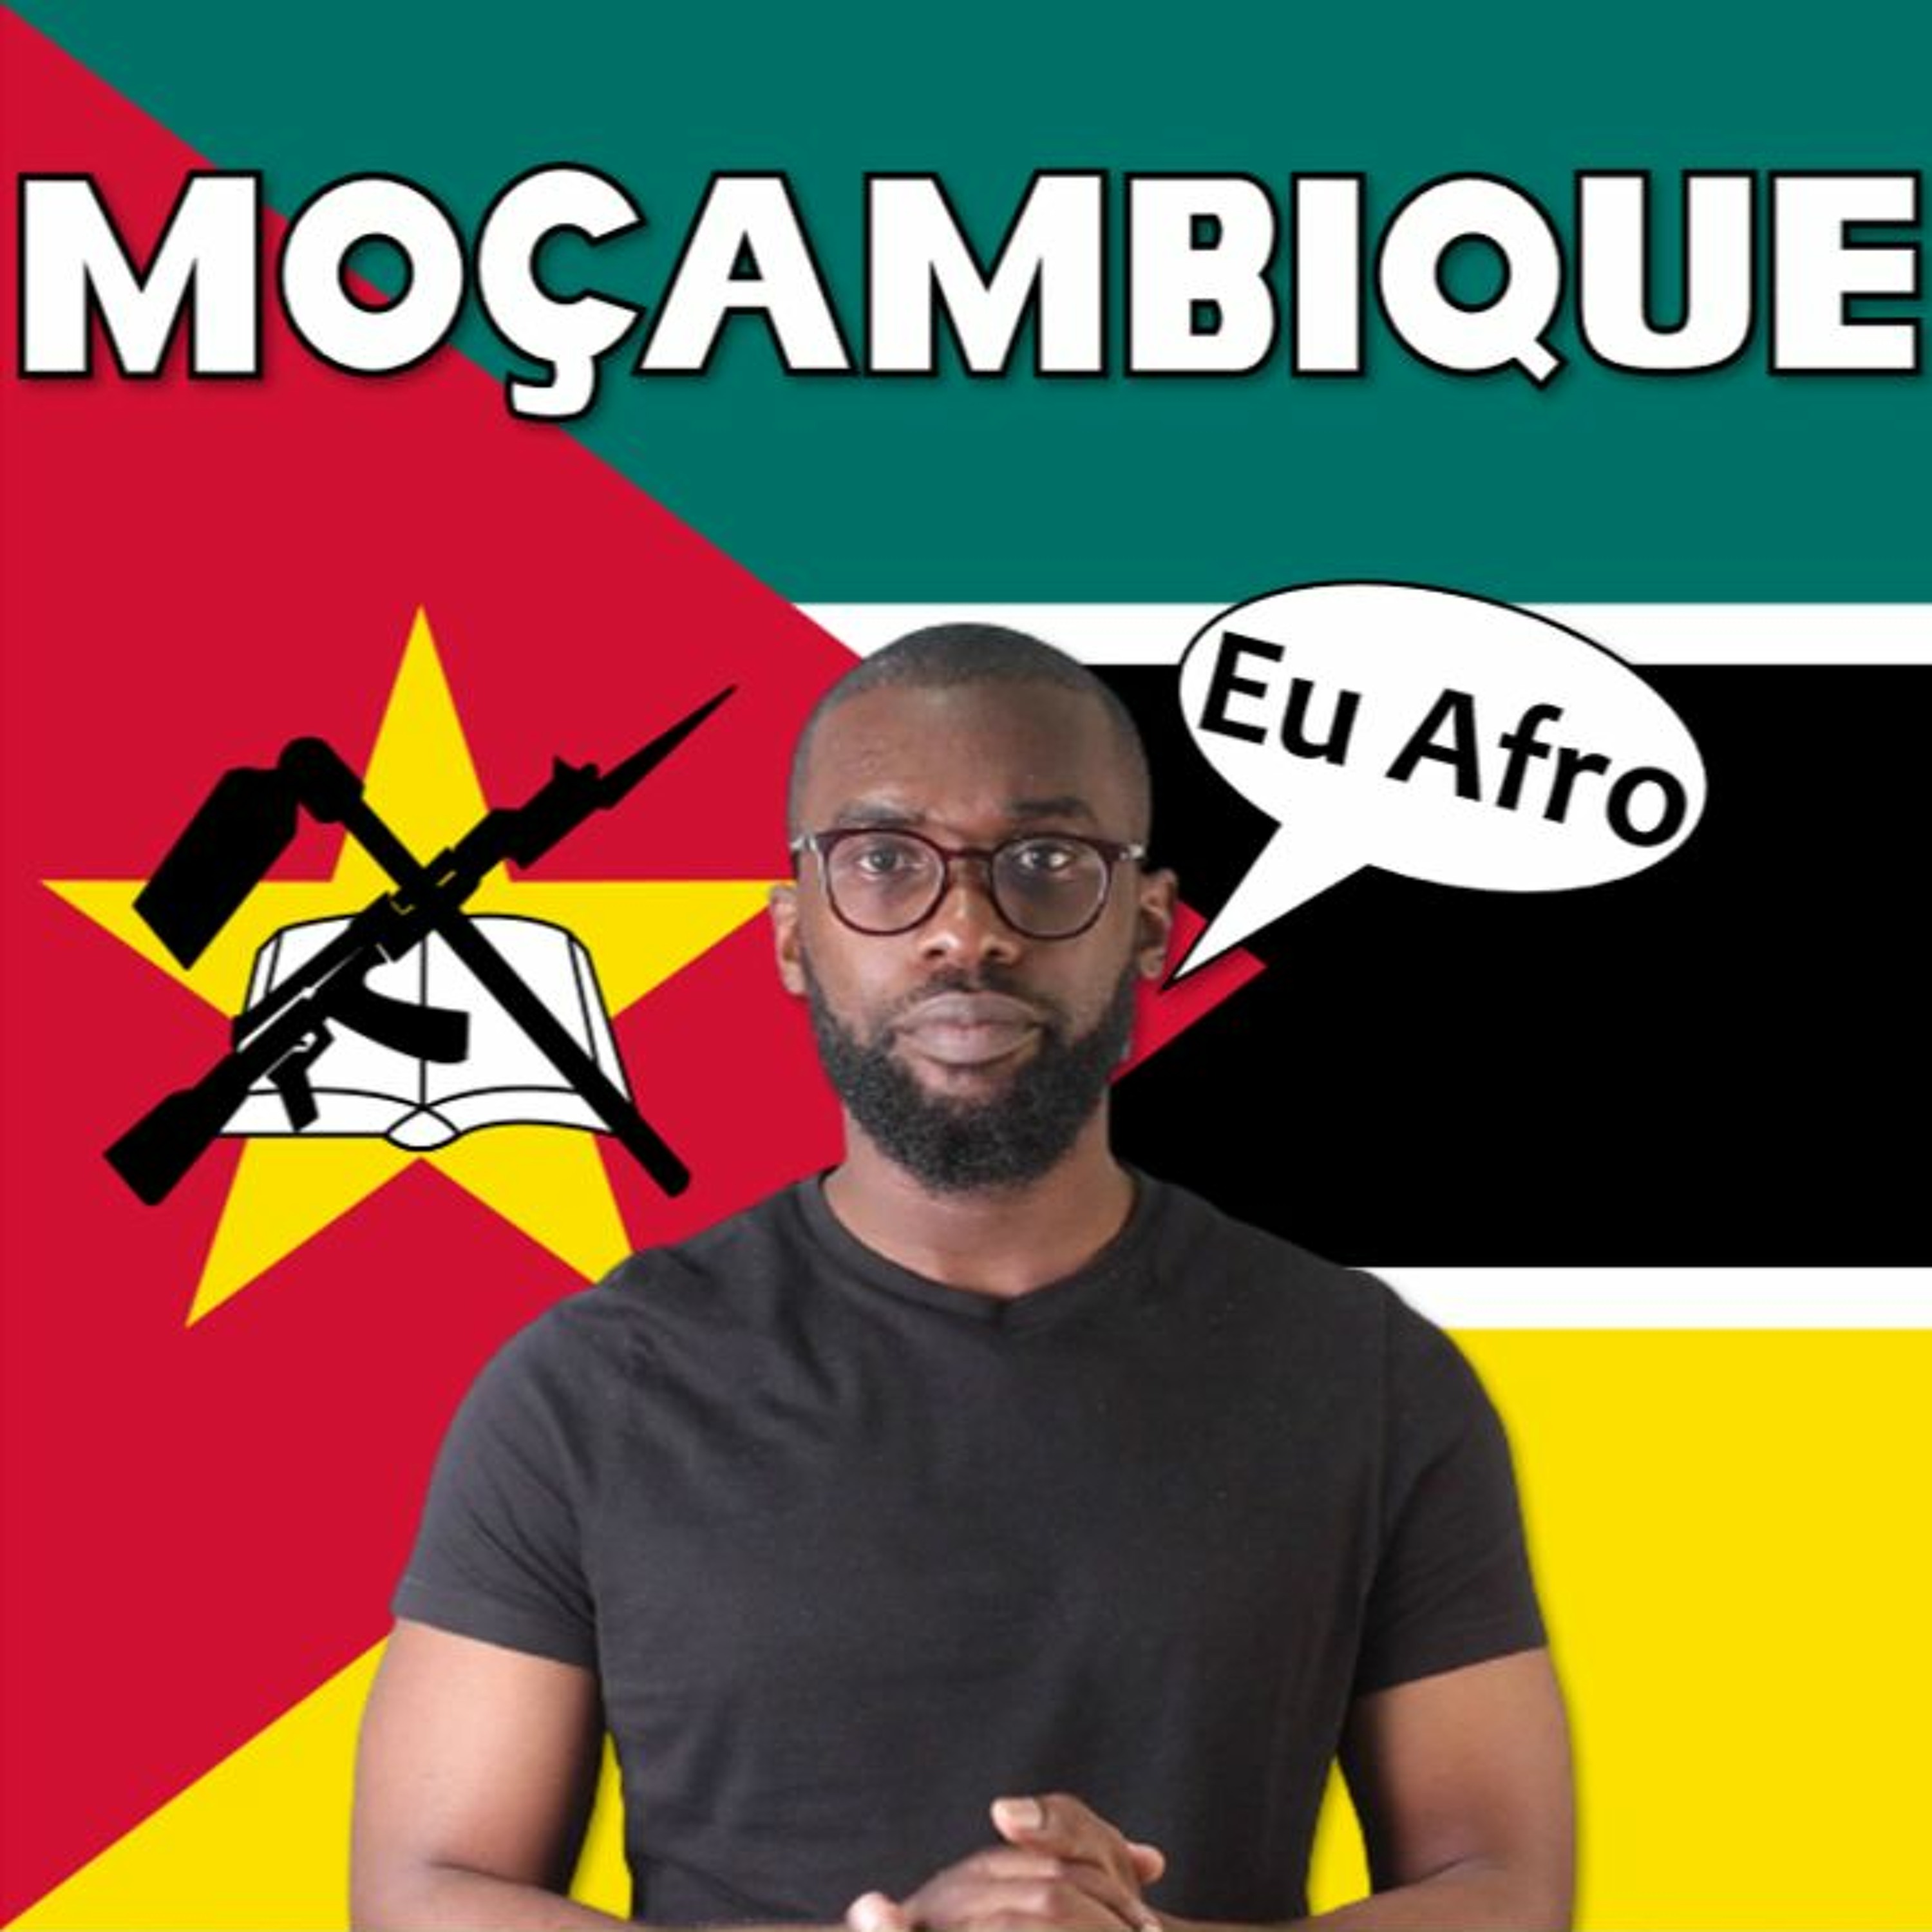 Como é Moçambique? 🇲🇿